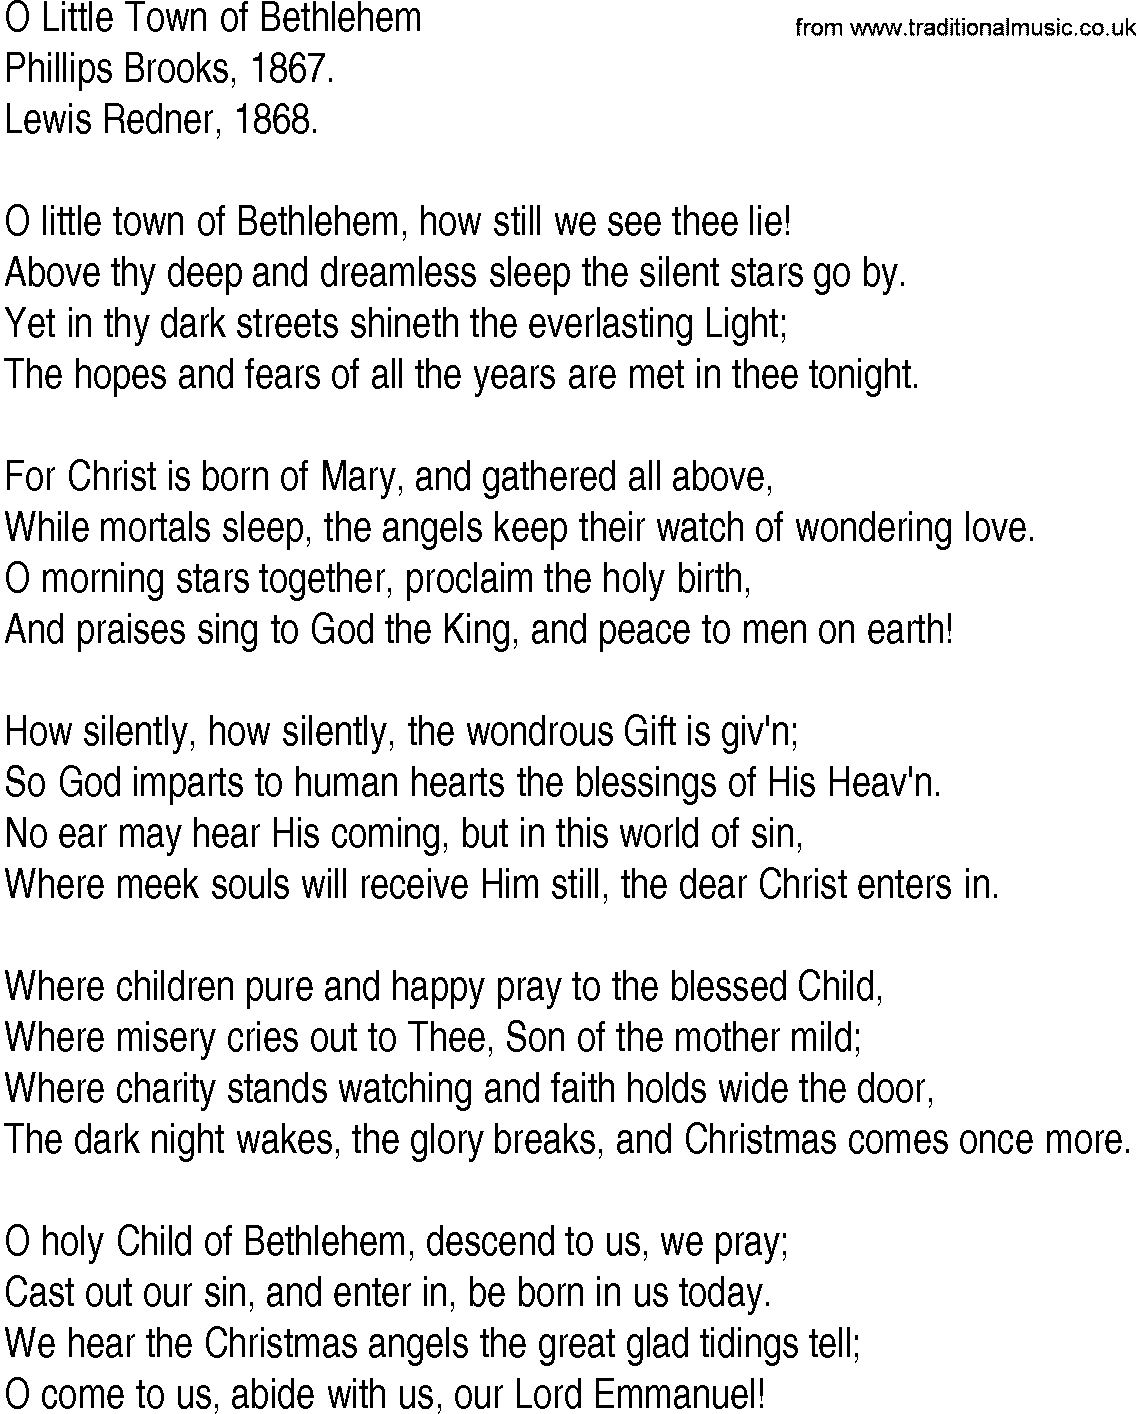 Hymn and Gospel Song Lyrics for O Little Town of Bethlehem by Phillips Brooks